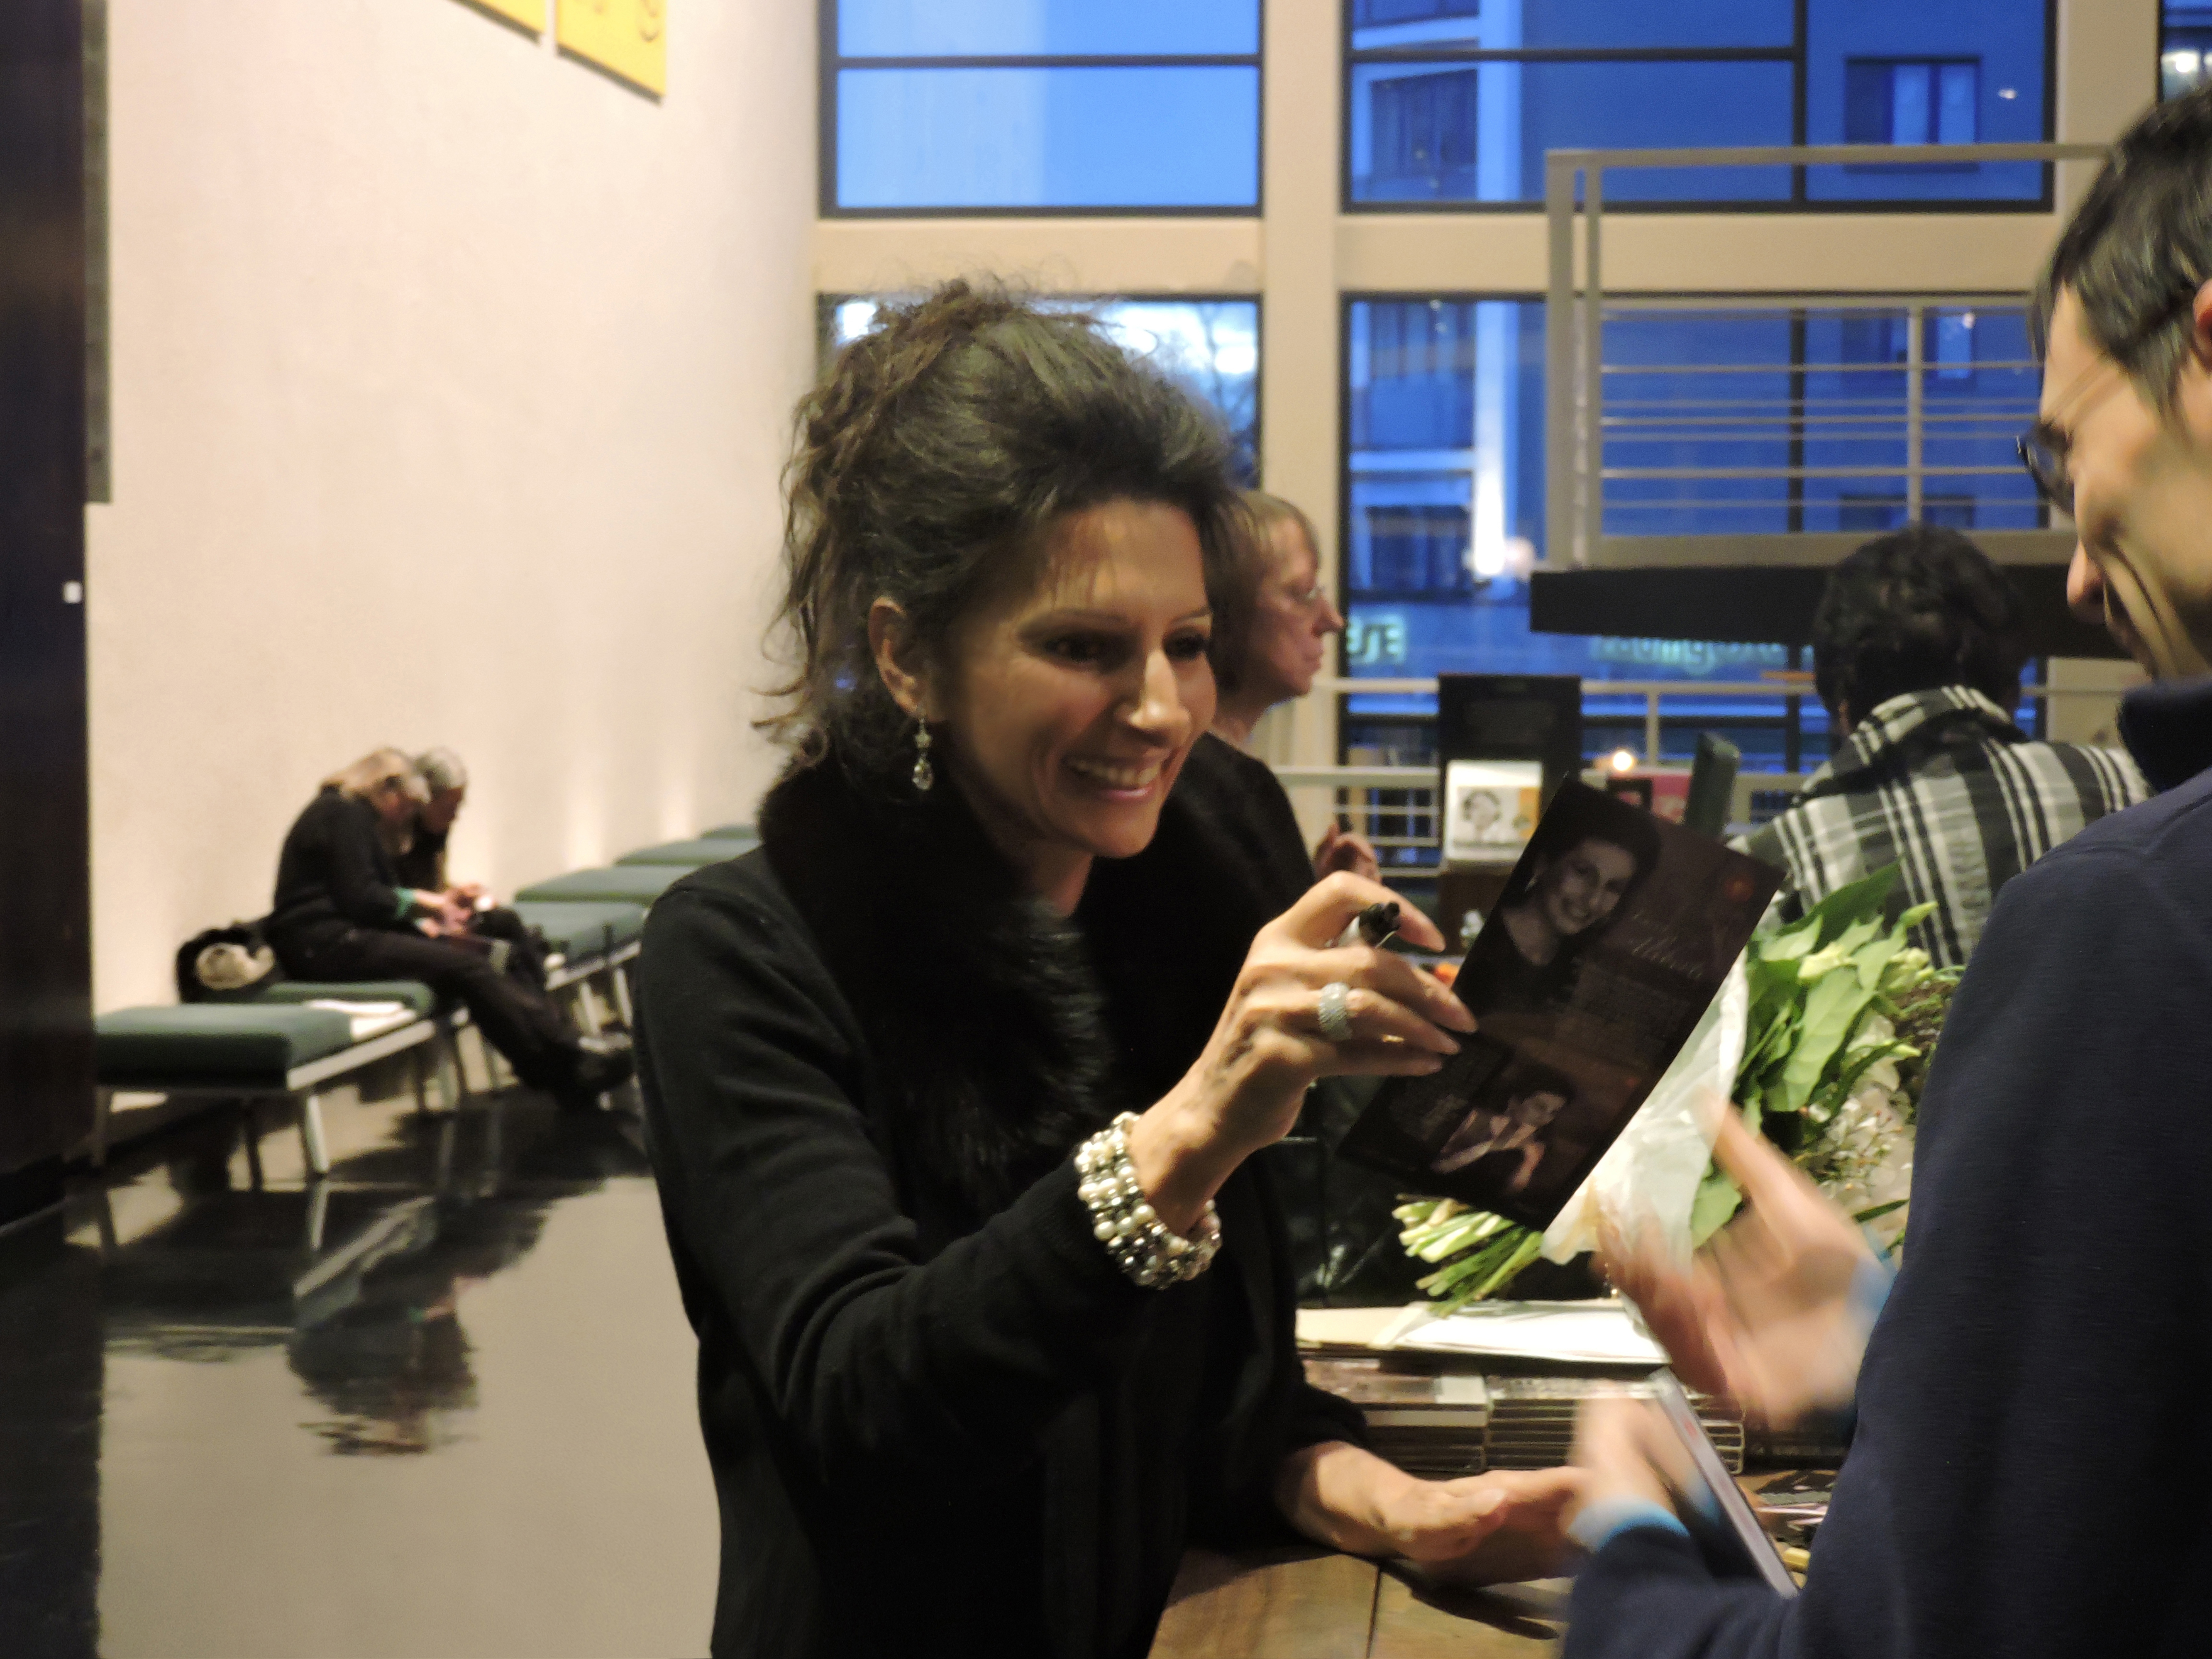 Lucia Aliberti ⚘Deutsche Oper Berlin⚘Berlin⚘Belcanto-Symposion⚘Autograph Session⚘Escada Fashion⚘:http://www.luciaaliberti.it #luciaaliberti #deutscheoperberlin #berlin #belcantosymposion #autographsession #escadafashion